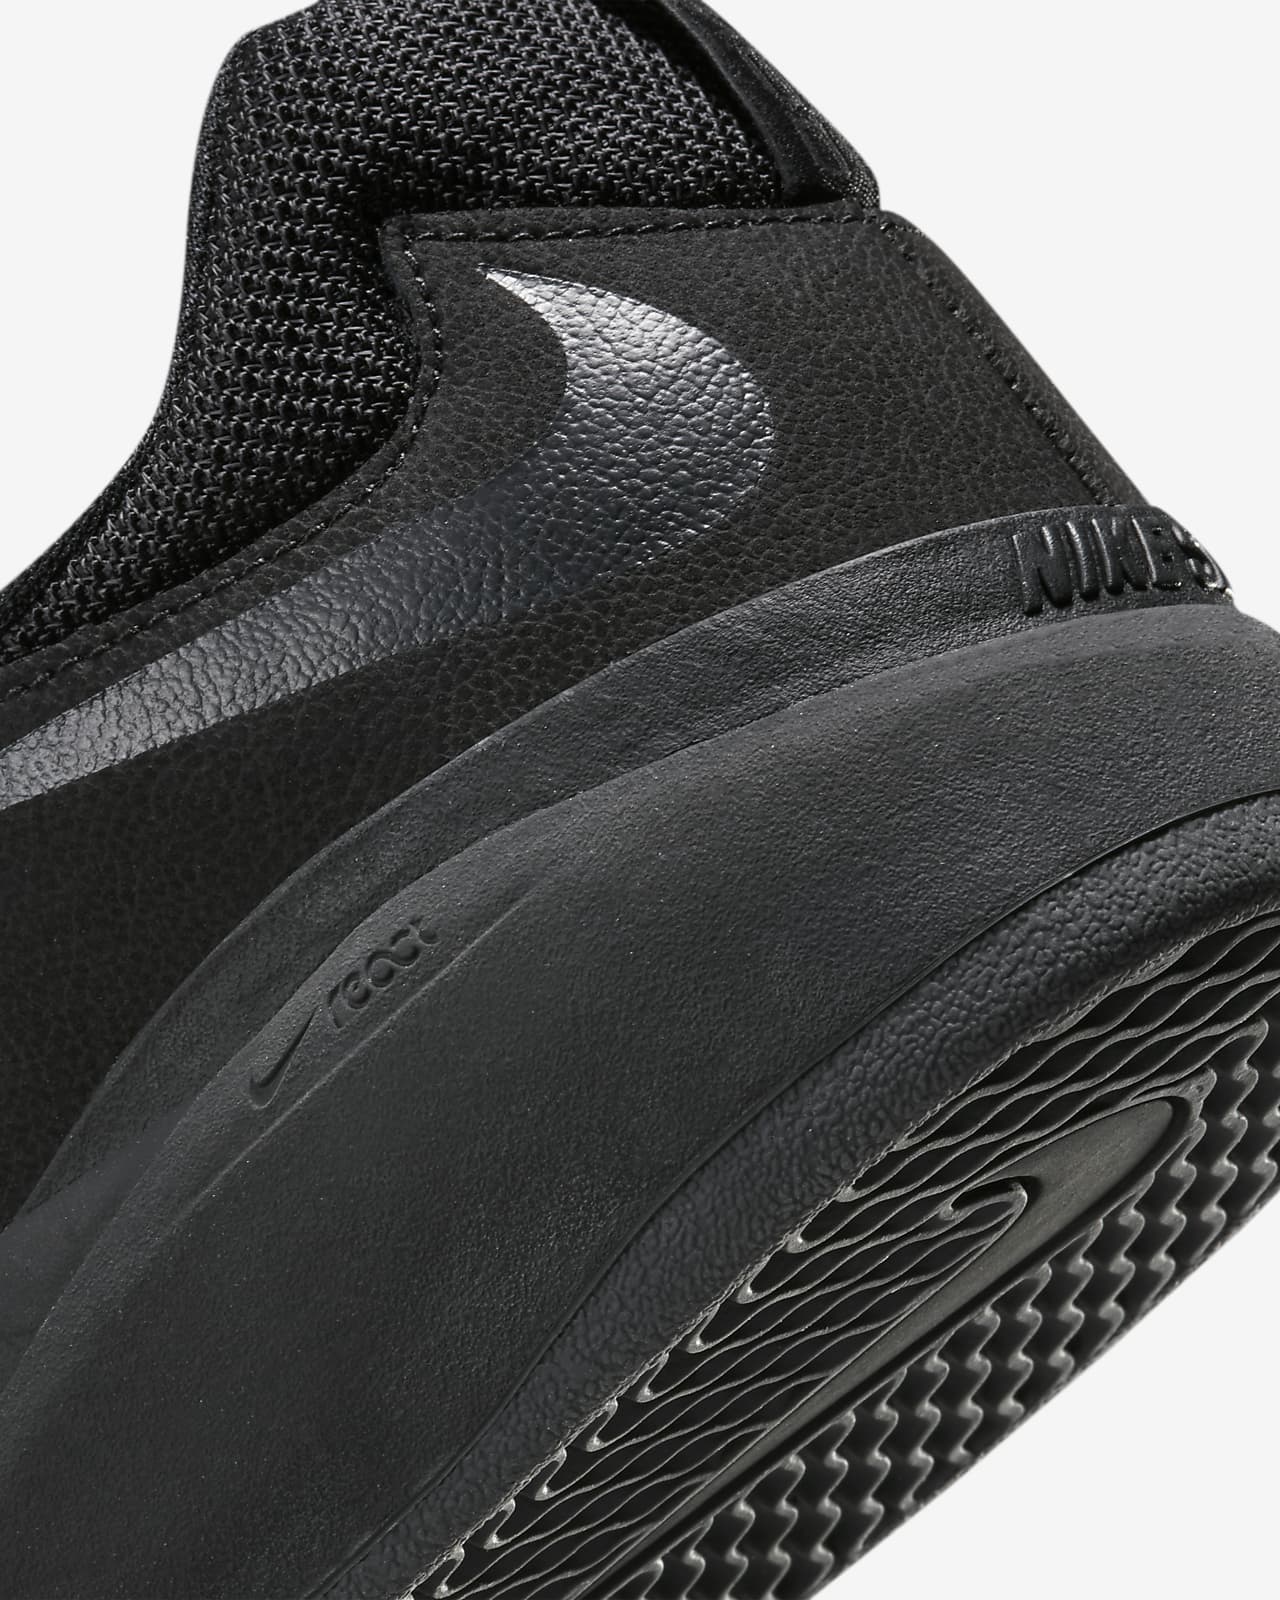 Entretener álbum de recortes Crudo Nike SB Ishod Wair Premium Skateschoenen. Nike BE